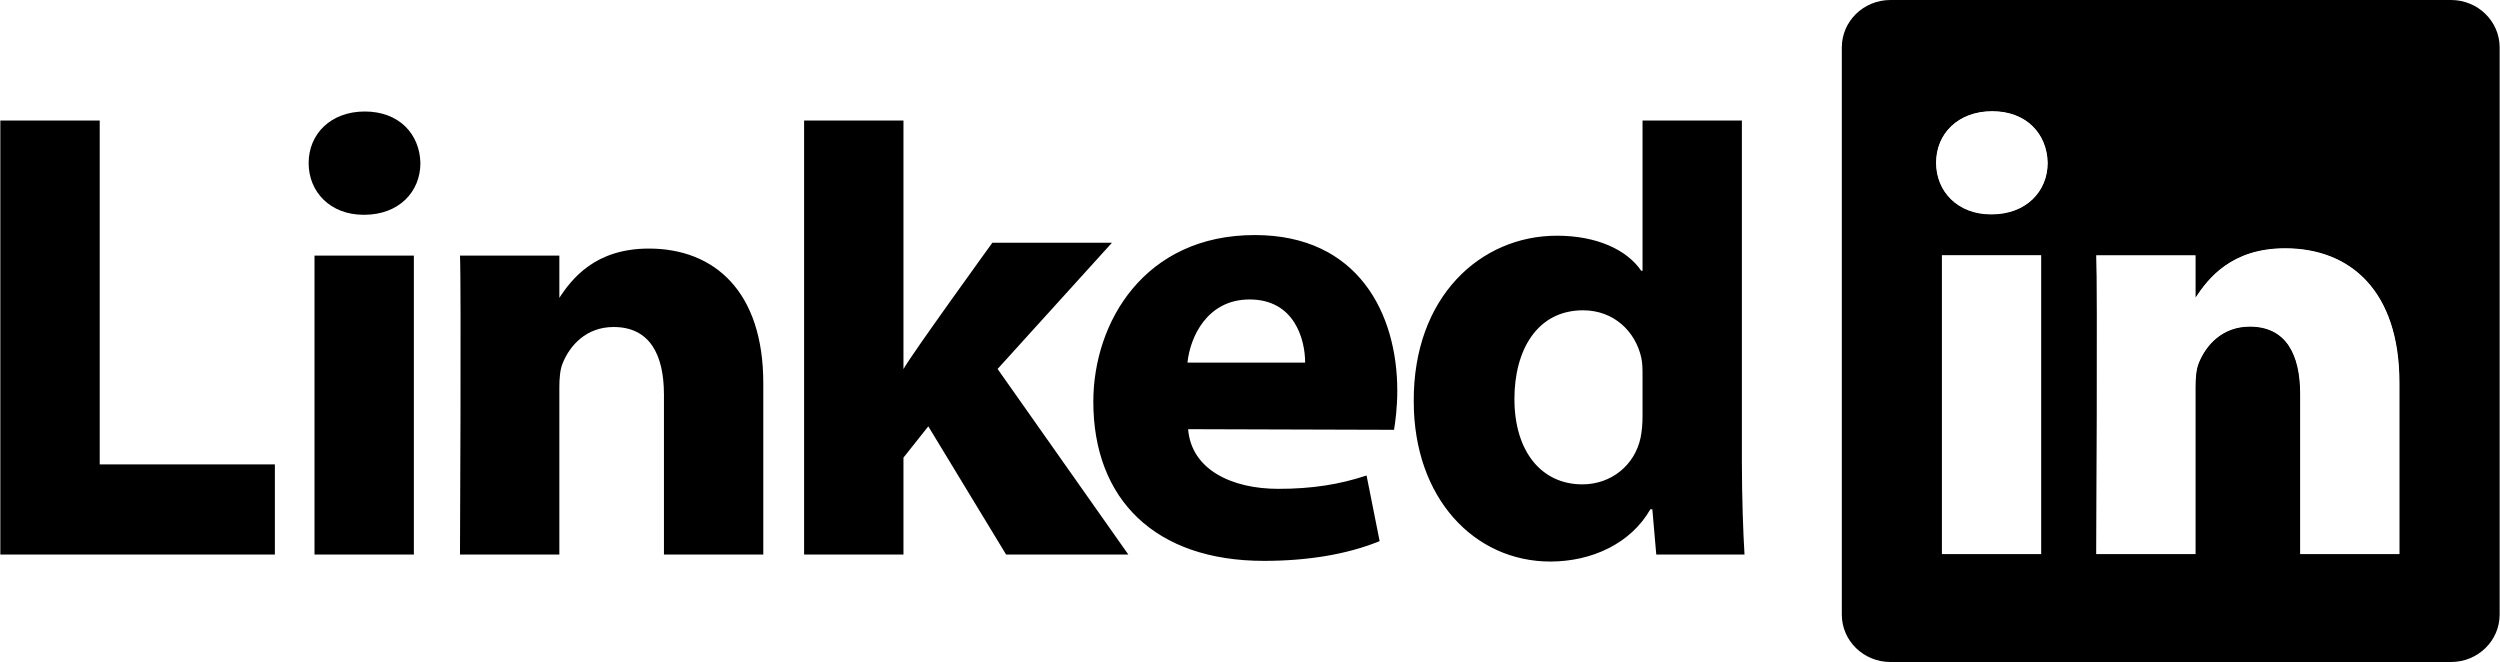 LinkedIn_Logo_1.jpg